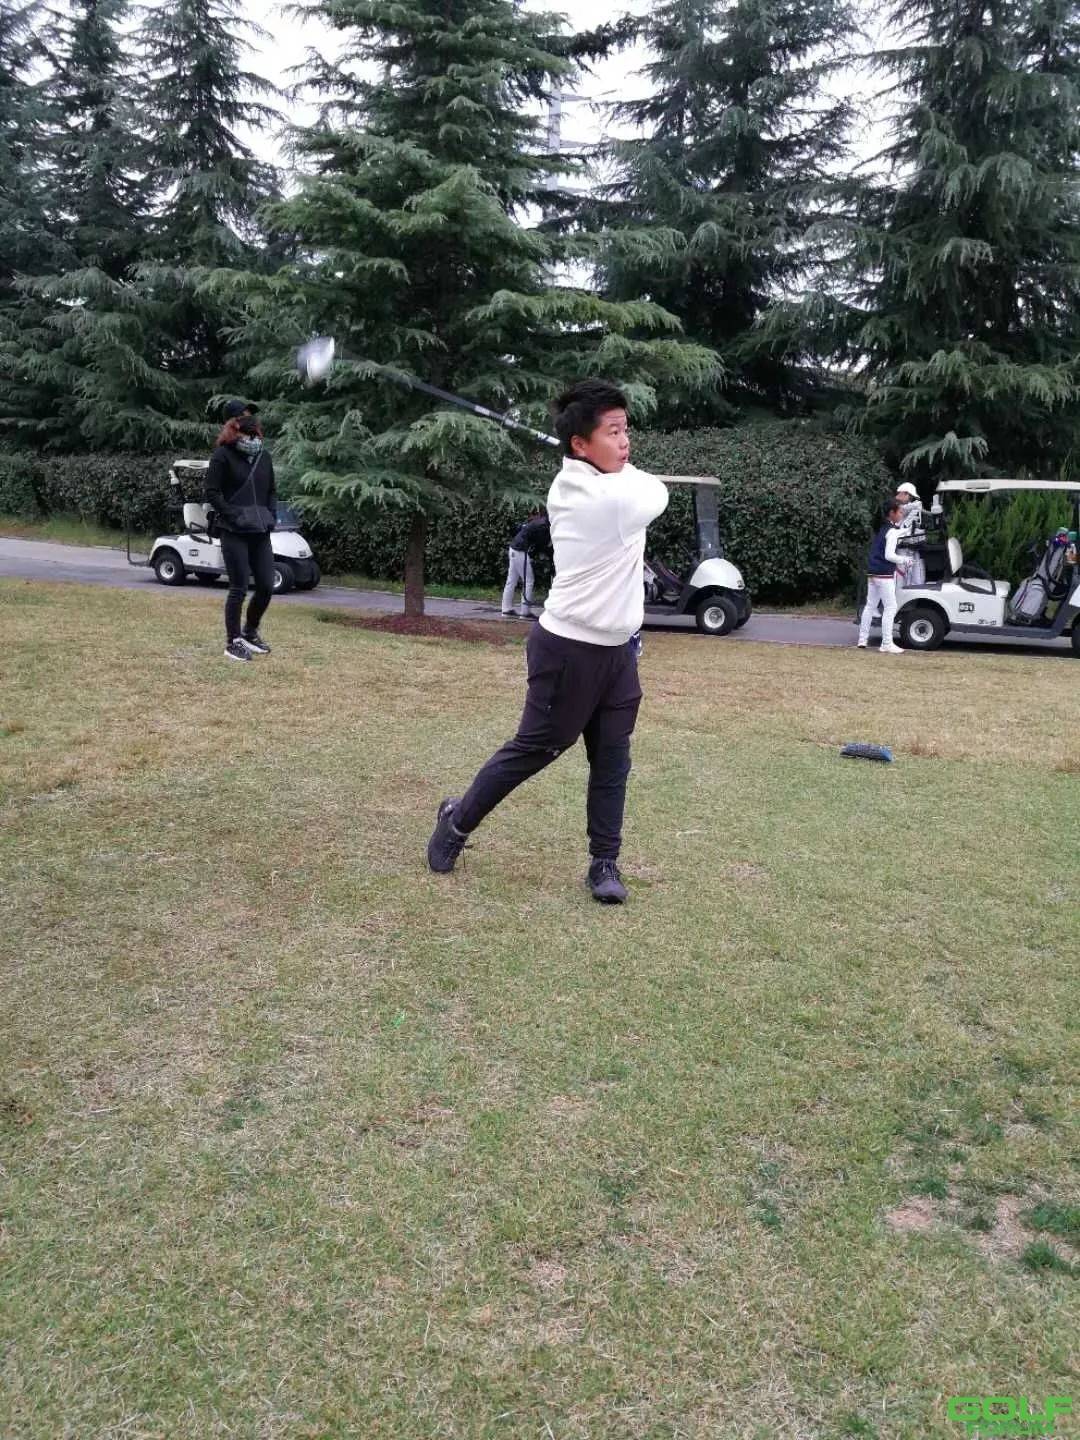 禧福祥6年西凤秦岭国际高尔夫青少年队训练掠影